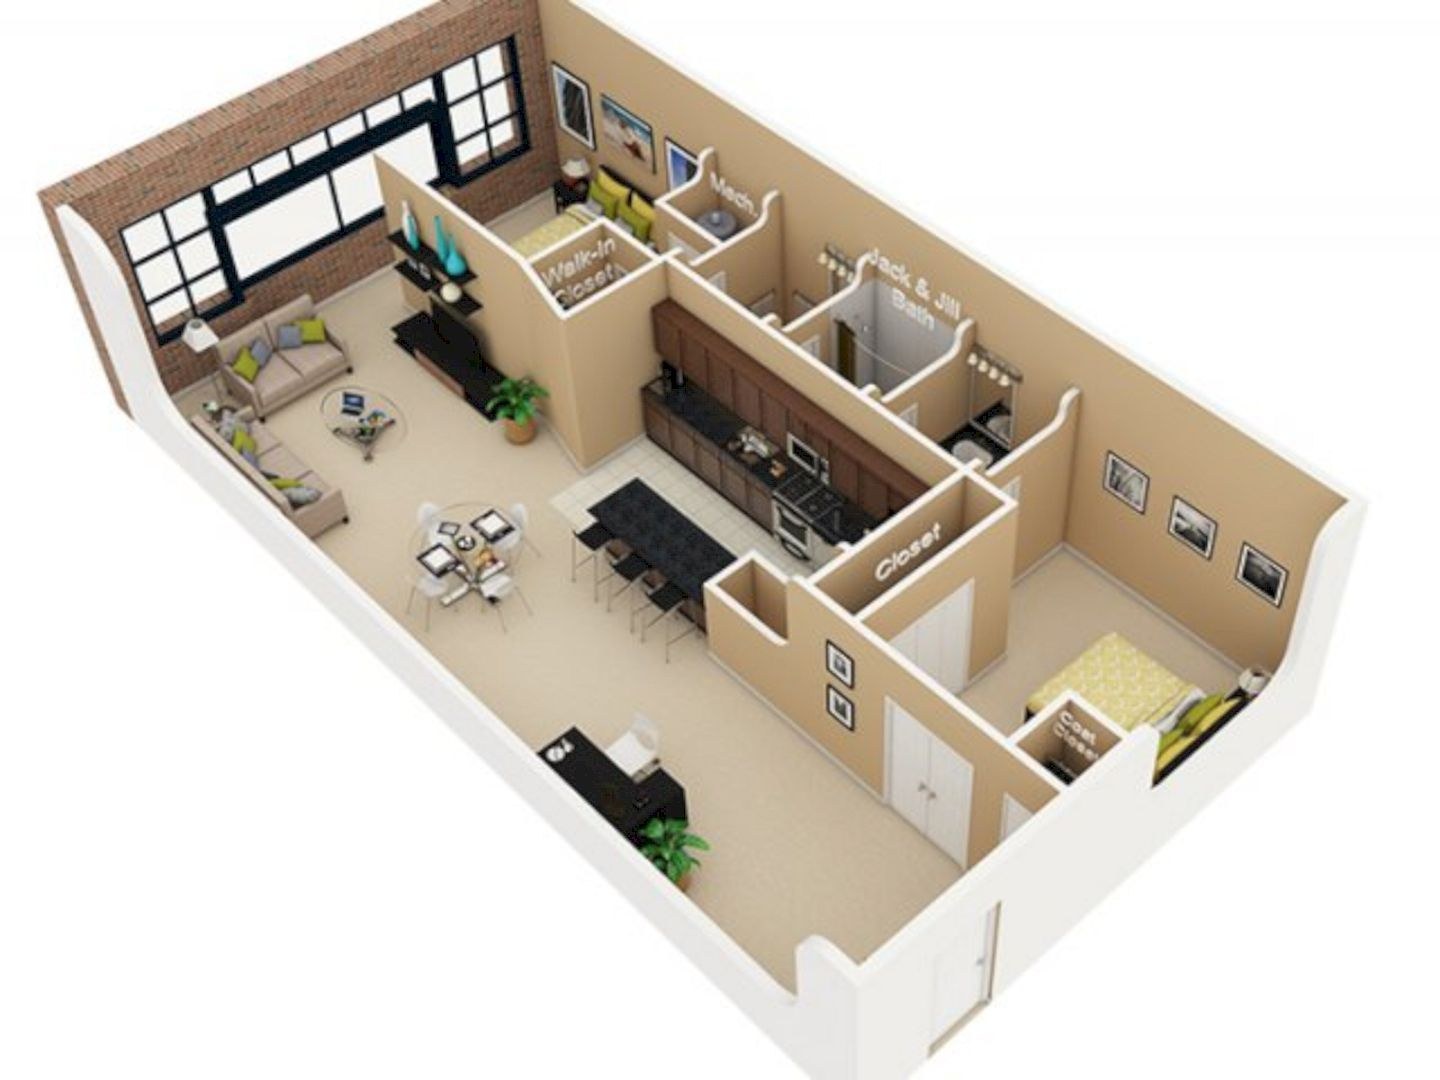 Plan 50. Планировка студии 2д. Plan Maison 80m2. Модель квартиры. Проектирование квартиры.